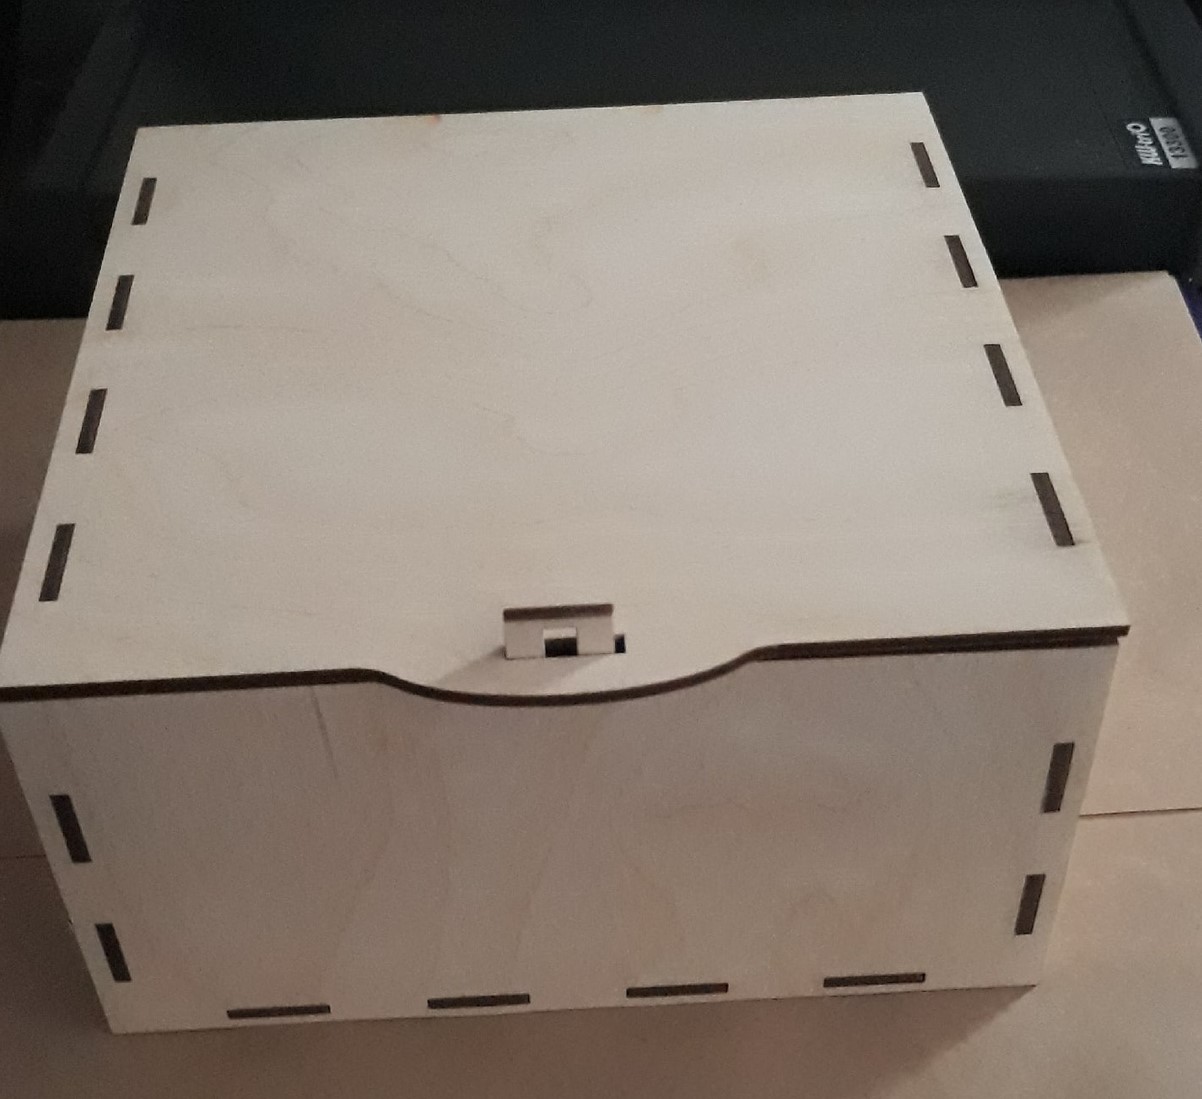 صندوق خشبي بسيط مقطوع بالليزر